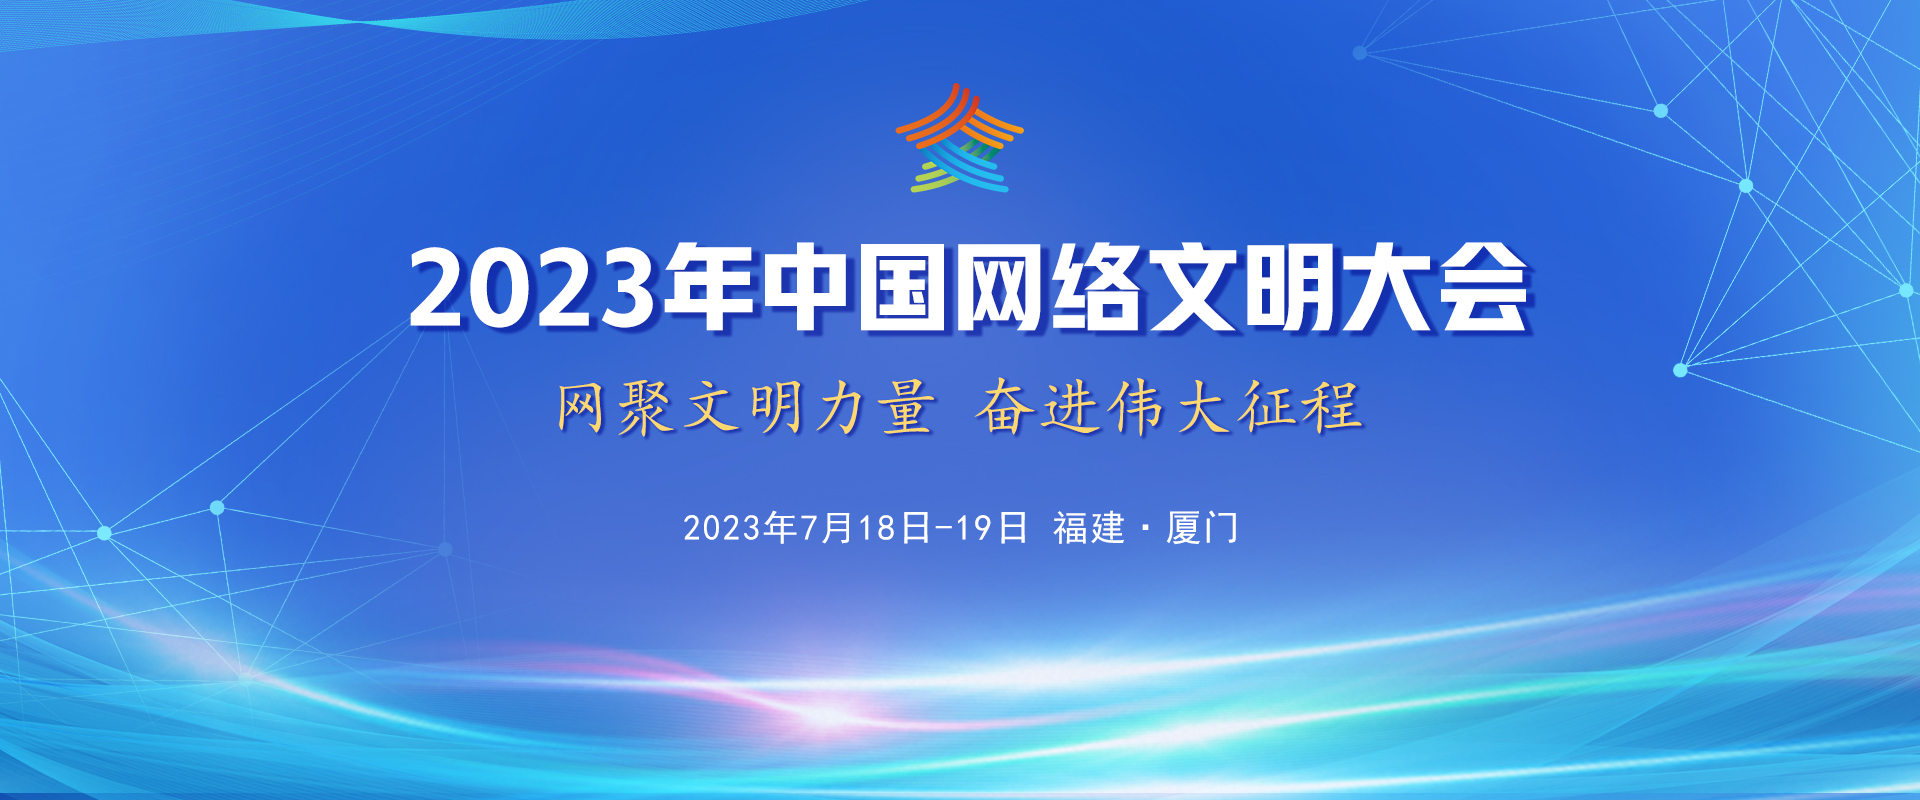 2023年中國網絡文明大會